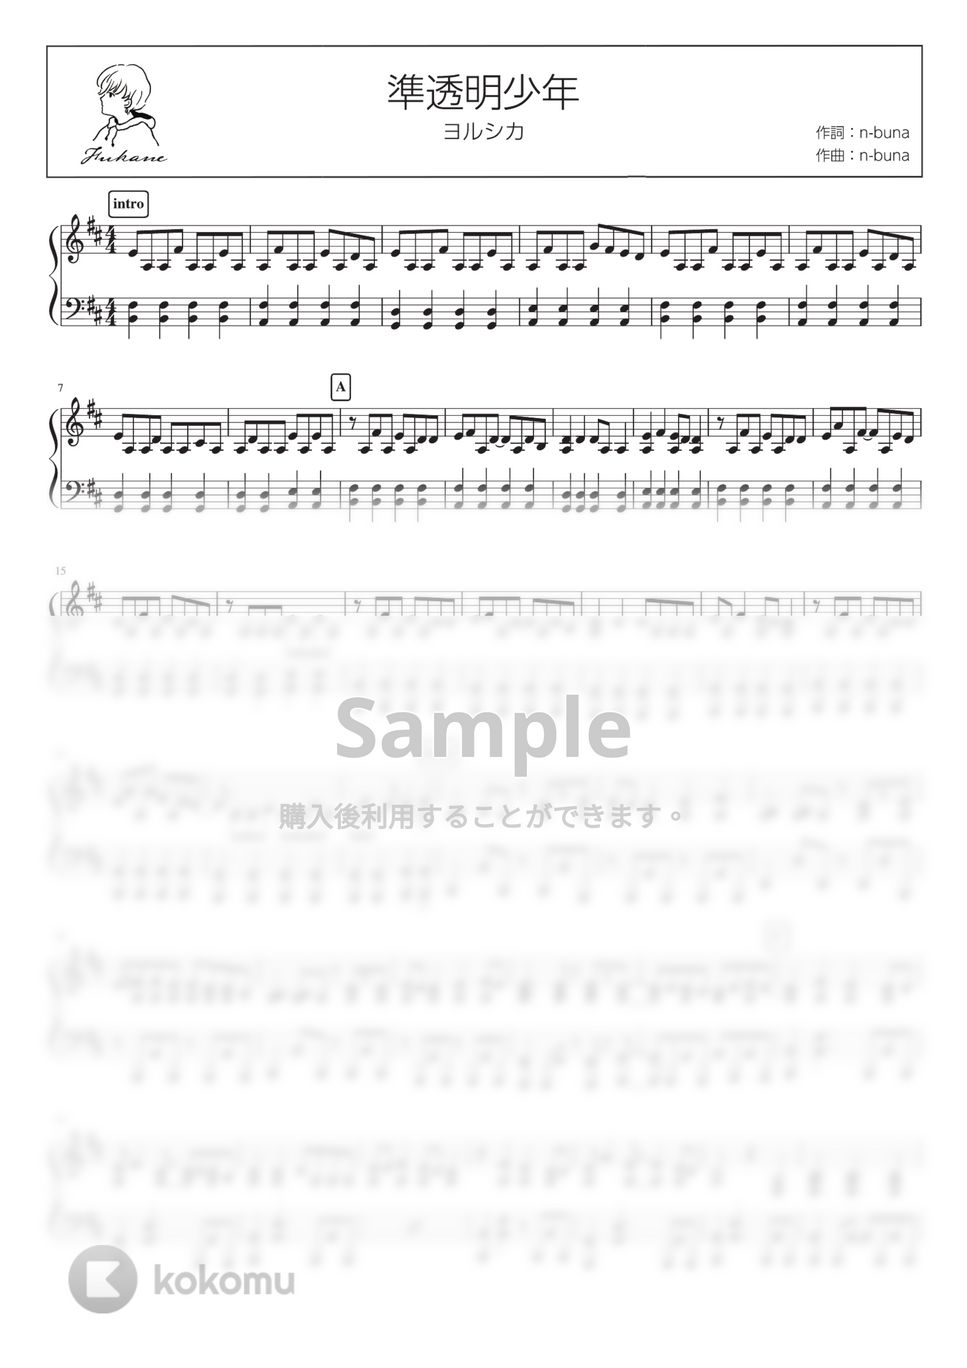 ヨルシカ - 準透明少年 (PianoSolo) by 深根 / Fukane